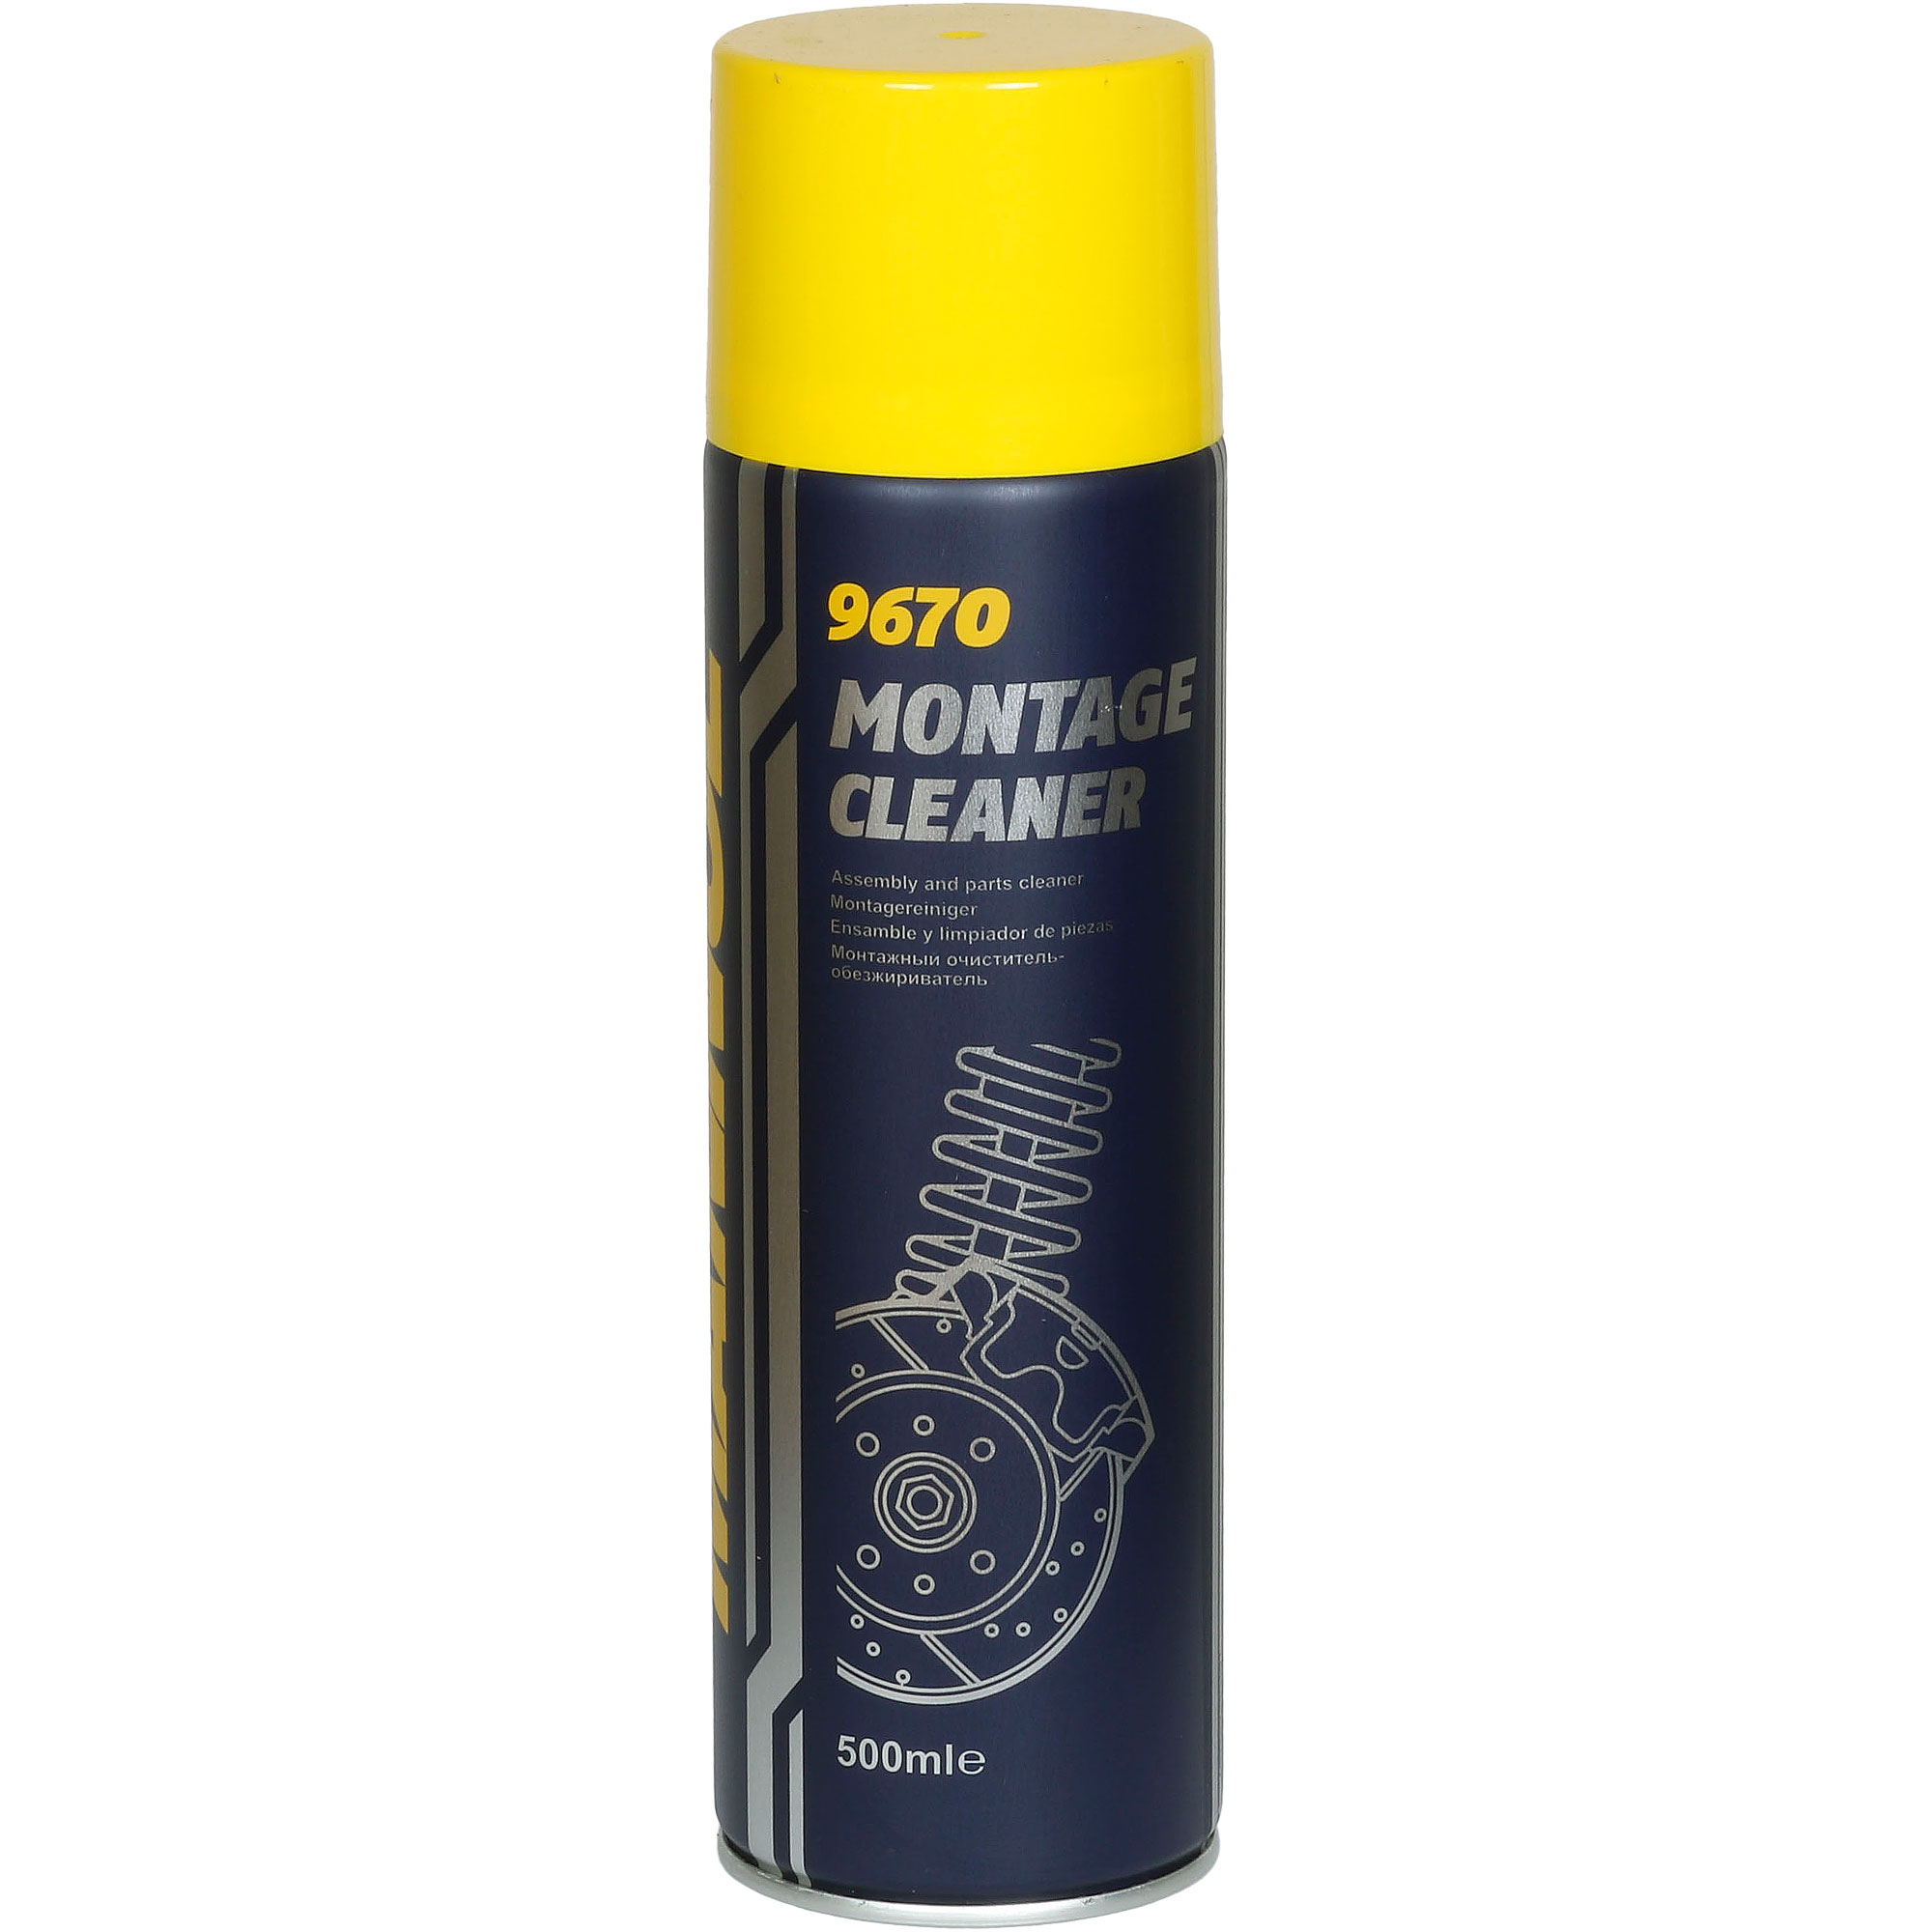 MANNOL 9670 Montage Cleaner 500ml Bremsenreiniger Entfetter Spray